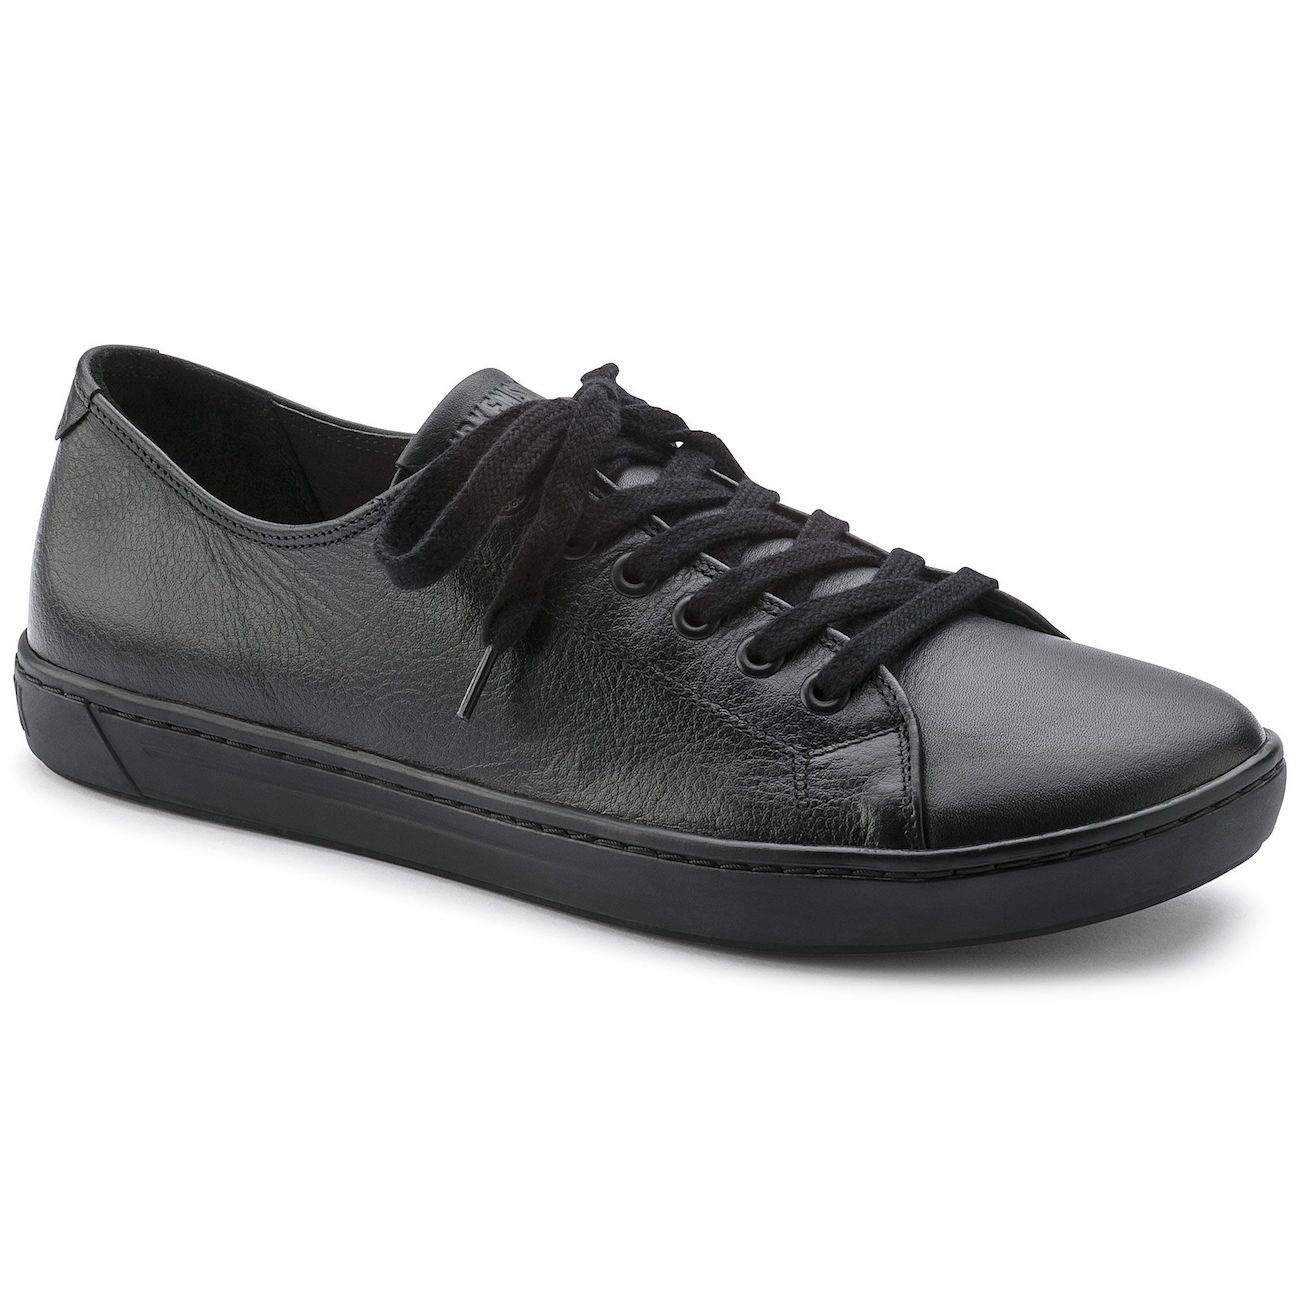 Birkenstock Shoes, Arran, Leather, Regular Fit, Black Shoes Birkenstock Shoes Black 41 